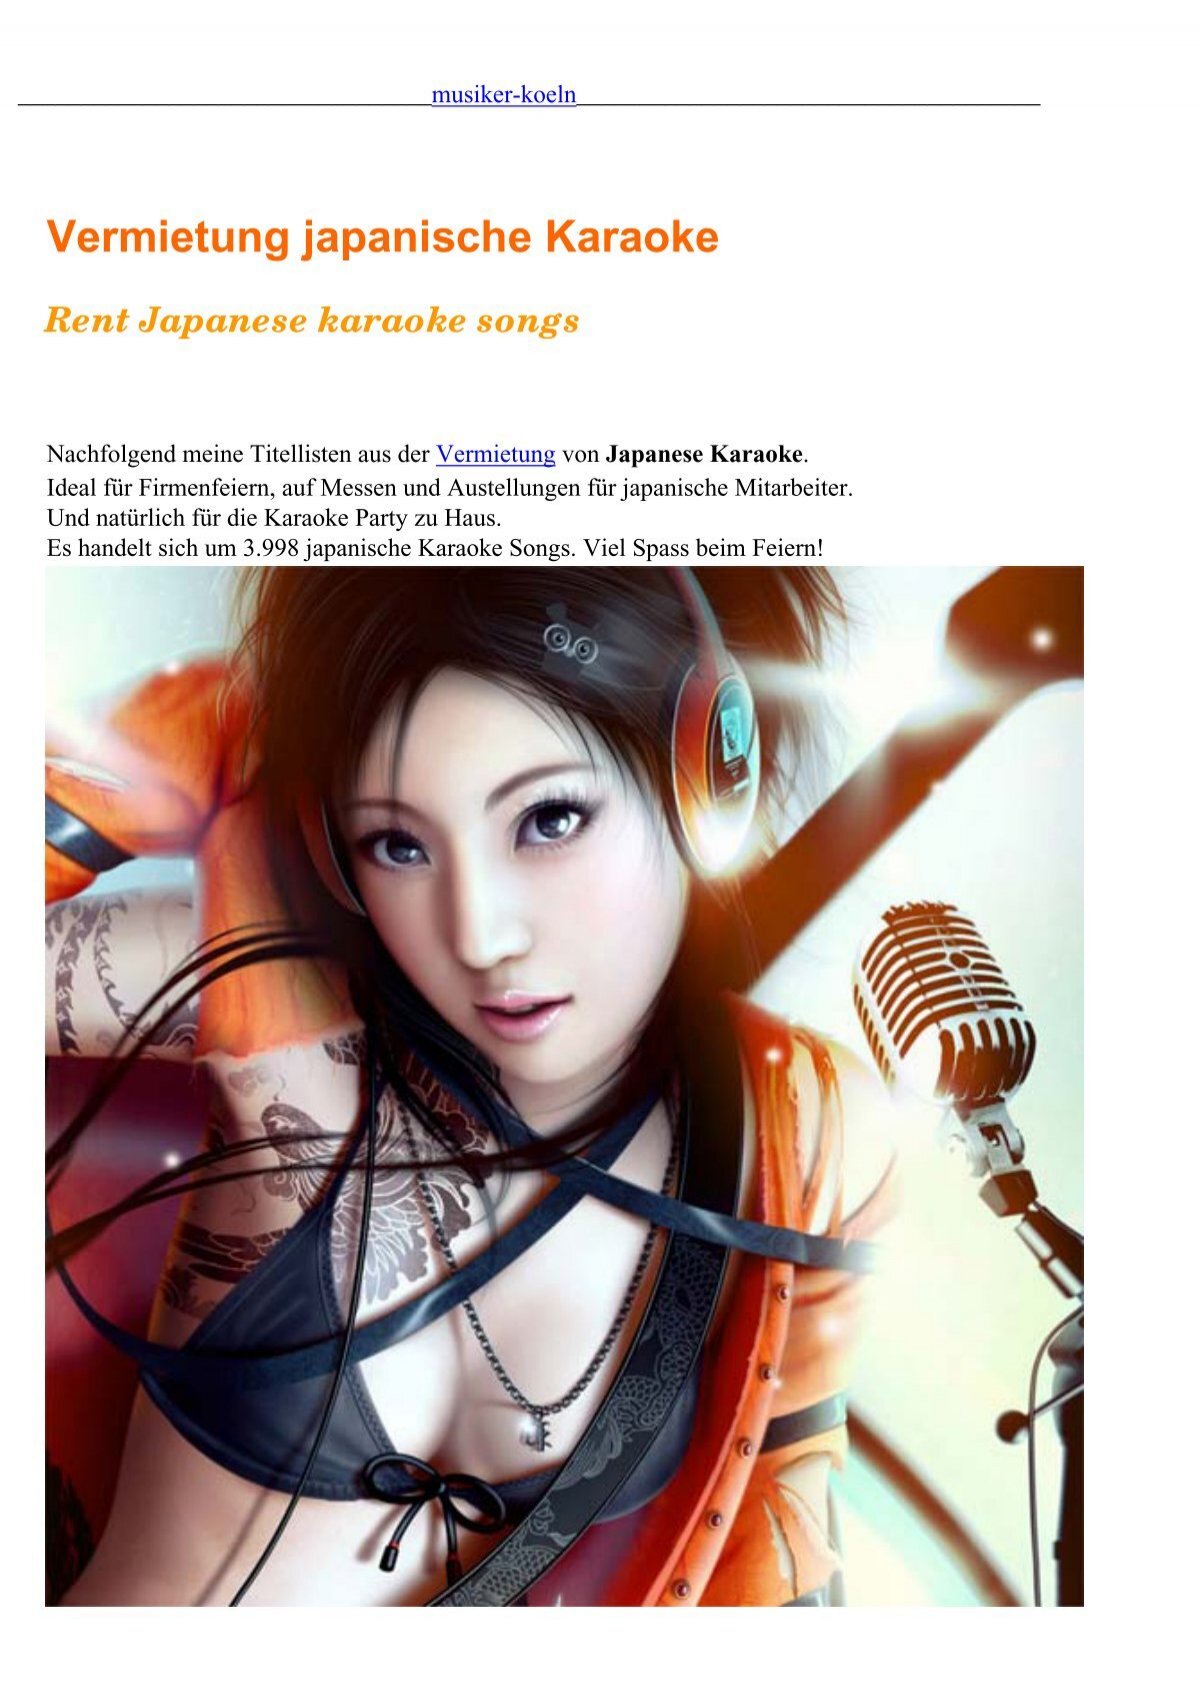 Vermietung japanische Karaoke - Musiker